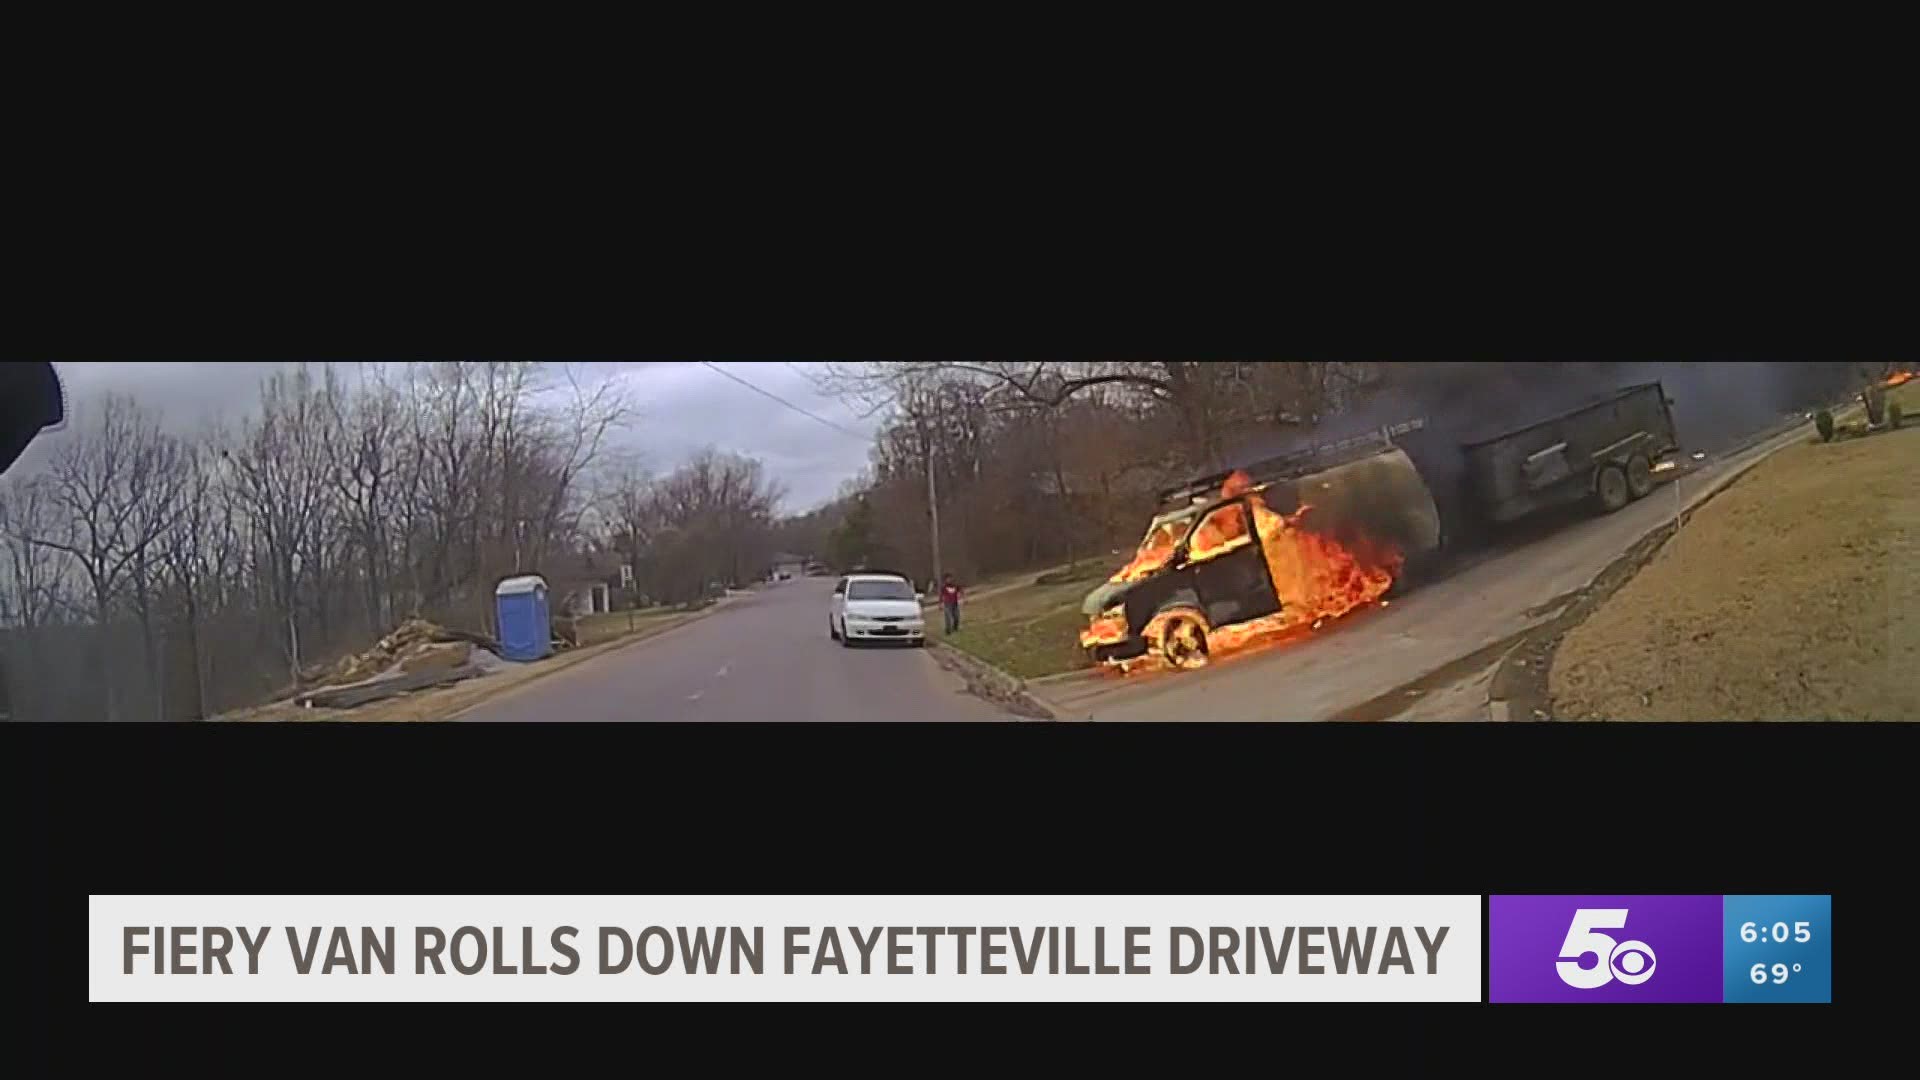 Fiery van rolls down Fayetteville driveway